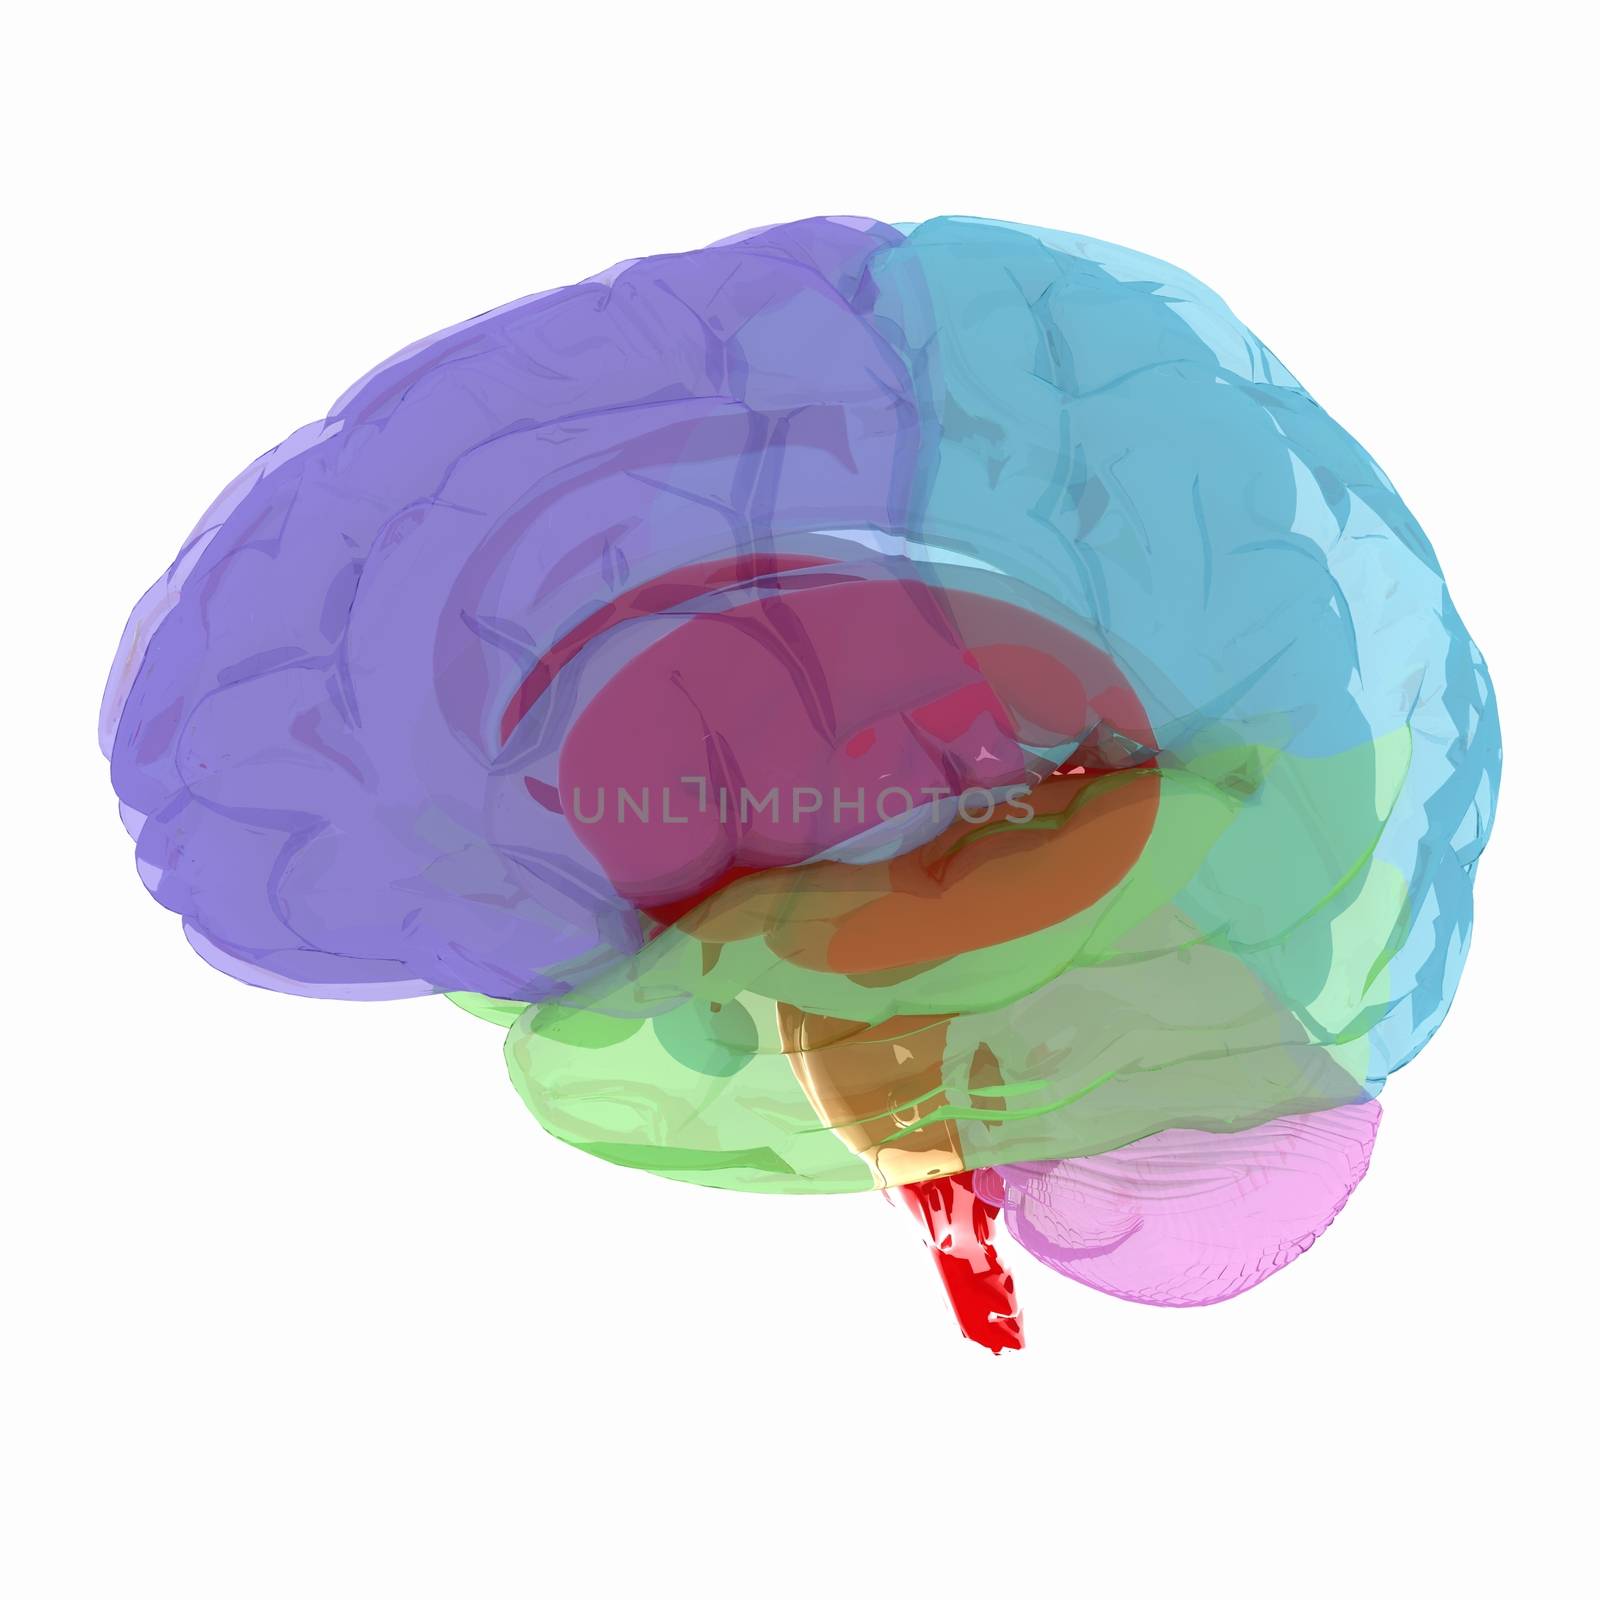 Human brain by Guru3D